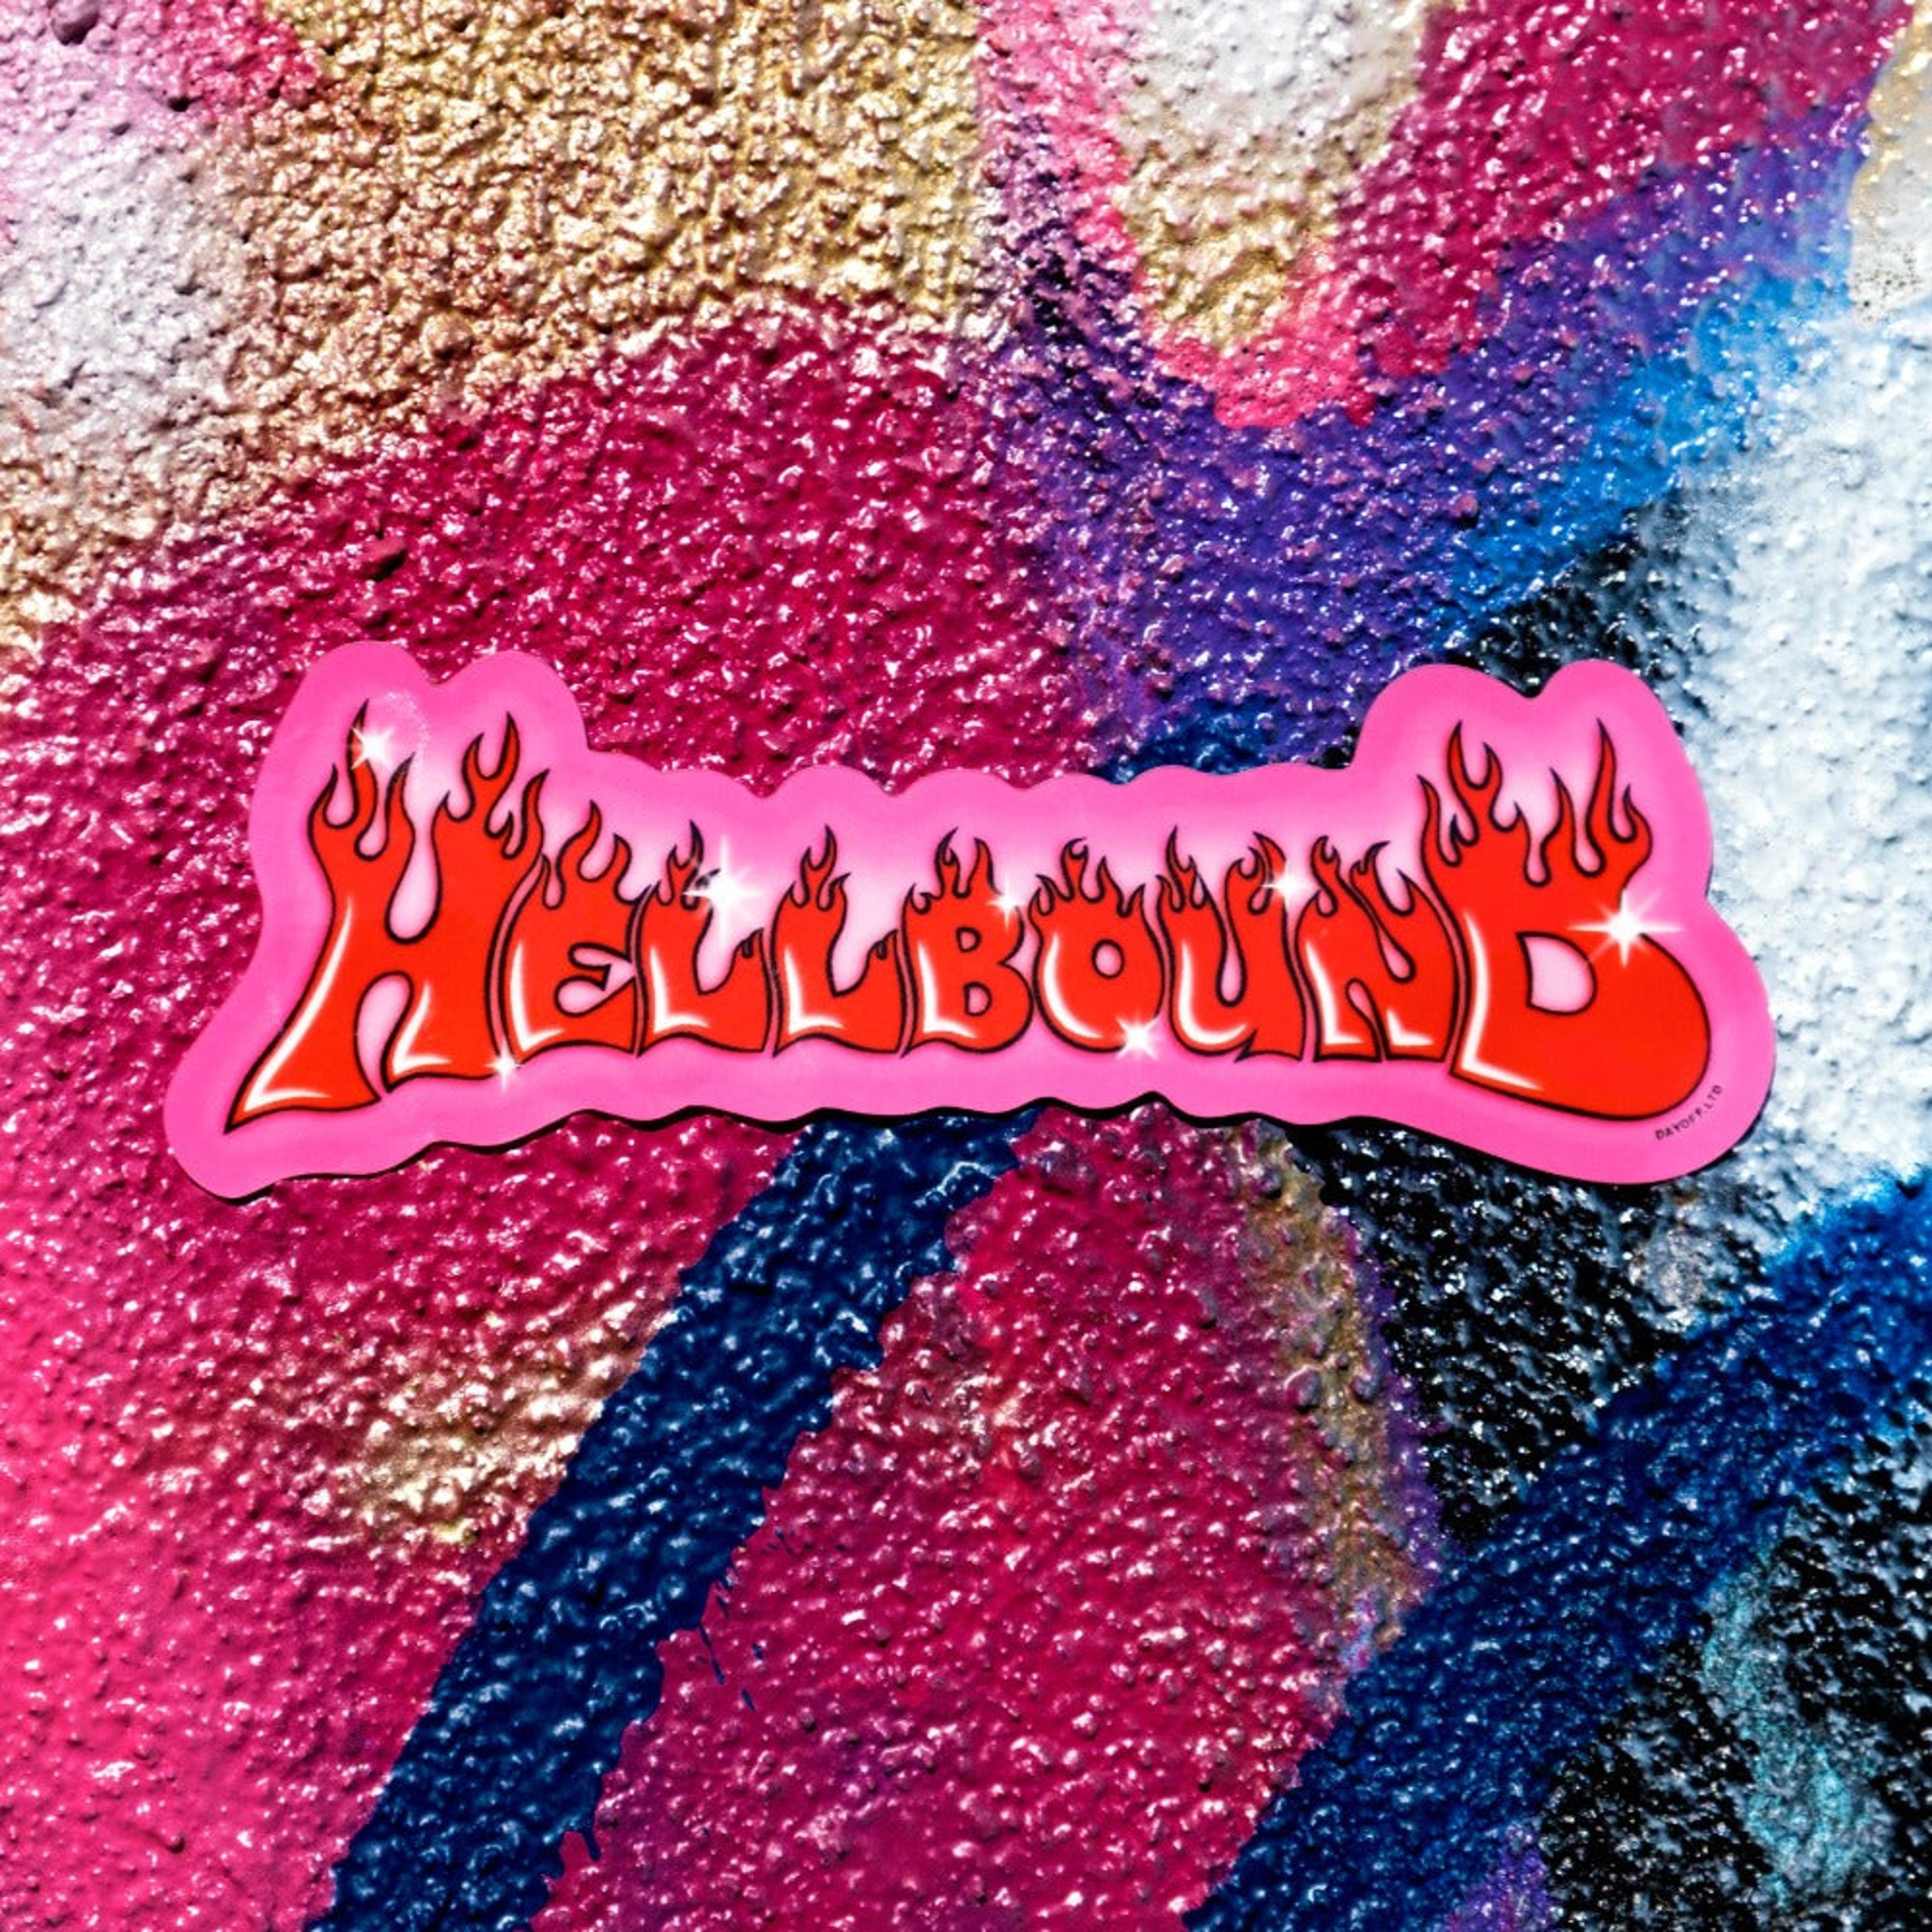 Alternate View 1 of Hellbound Sticker